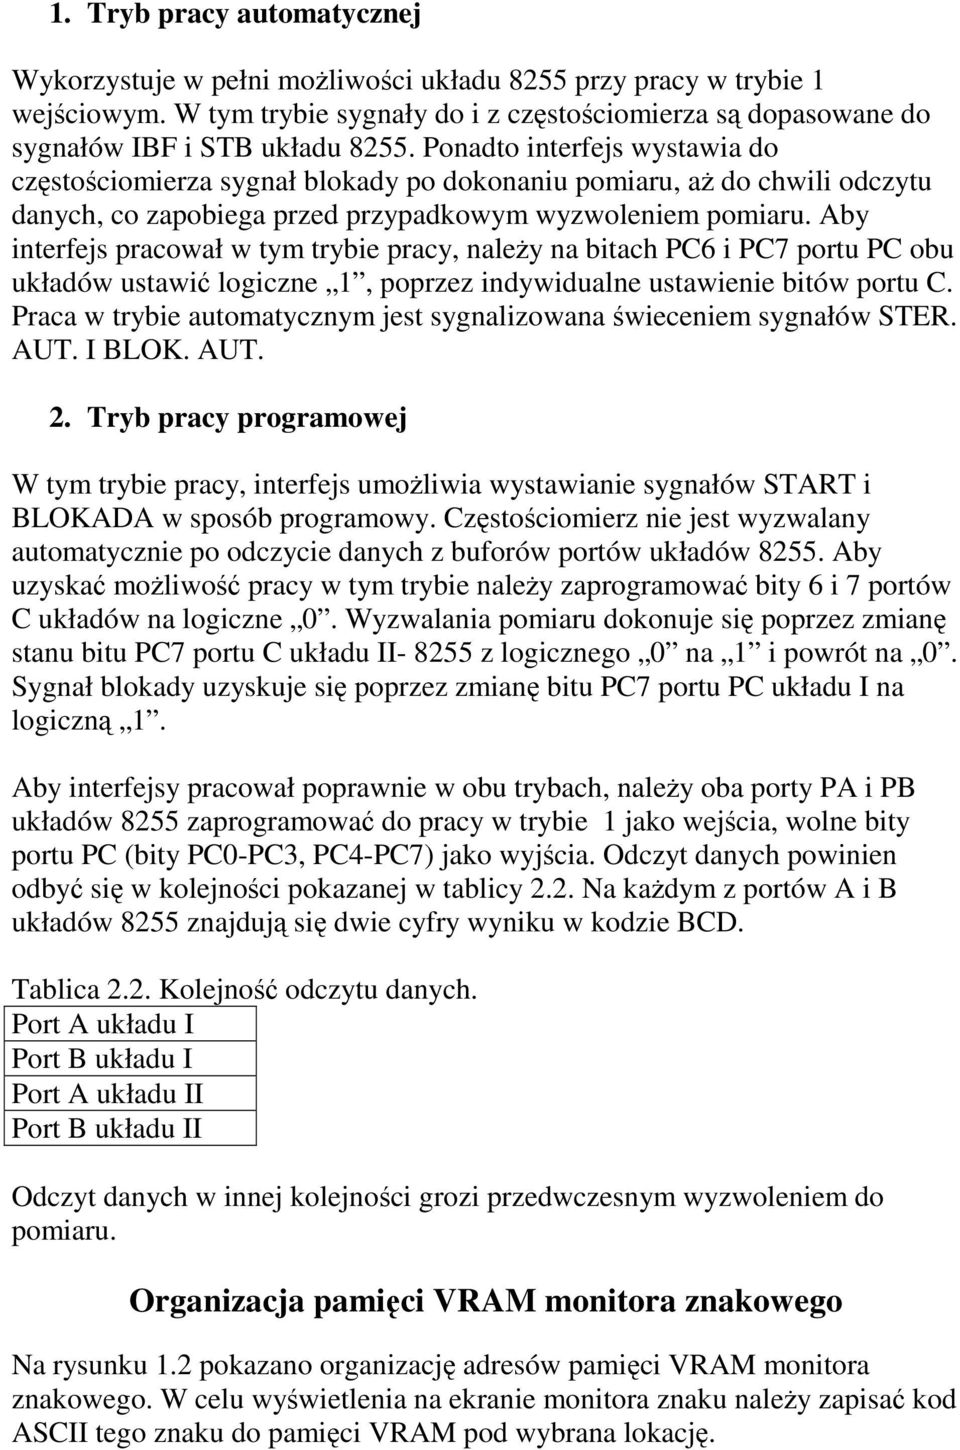 Aby interfejs pracował w tym trybie pracy, naleŝy na bitach PC6 i PC7 portu PC obu układów ustawić logiczne 1, poprzez indywidualne ustawienie bitów portu C.